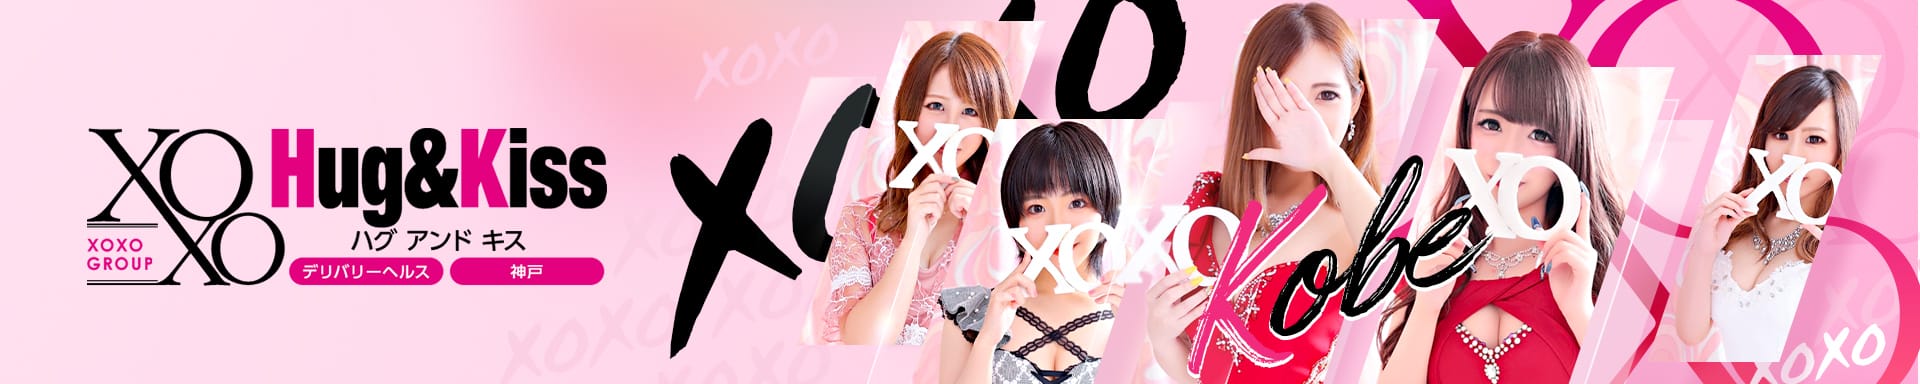 XOXO Hug&Kiss 神戸店